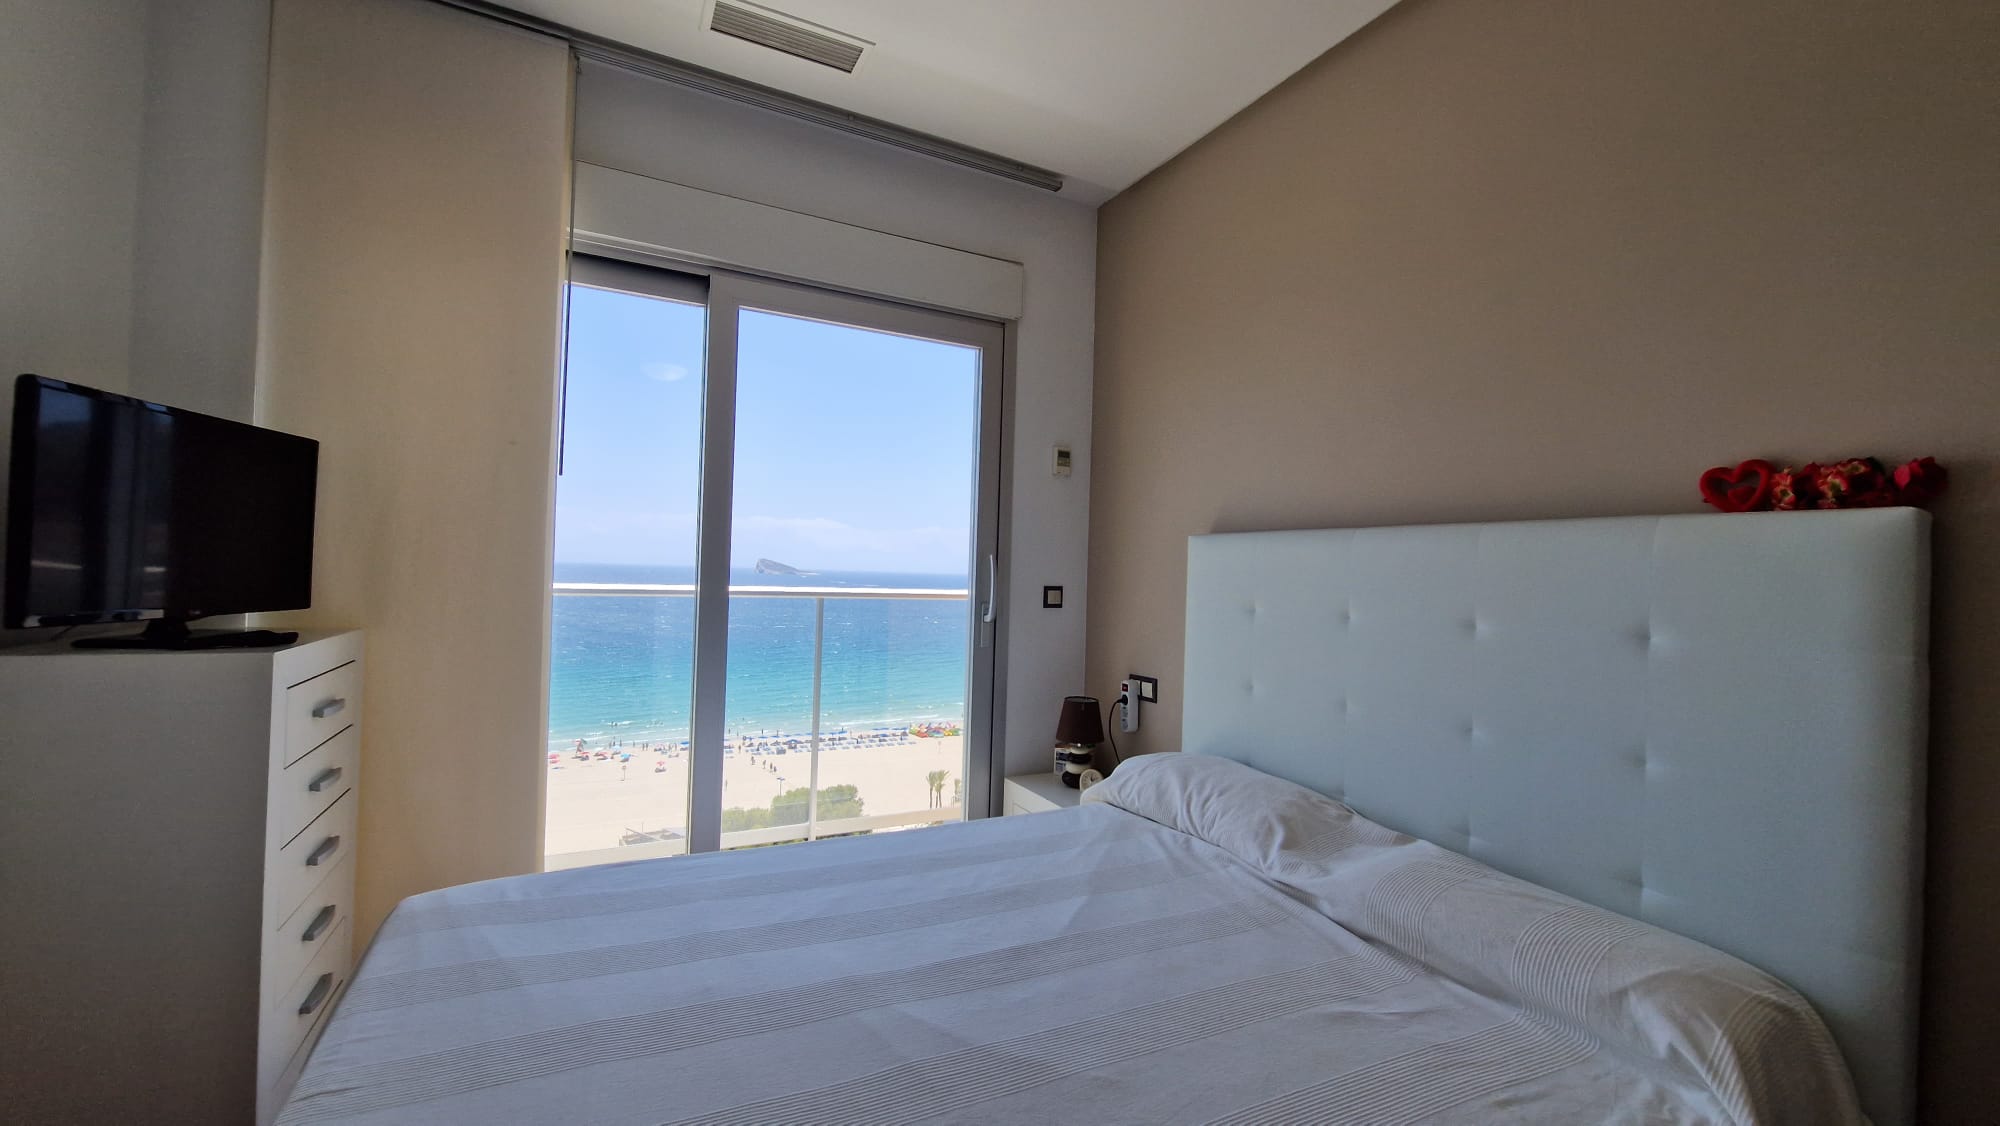 Frontline Beach Apartment Benidorm : Votre expérience idéale de la vie côtière